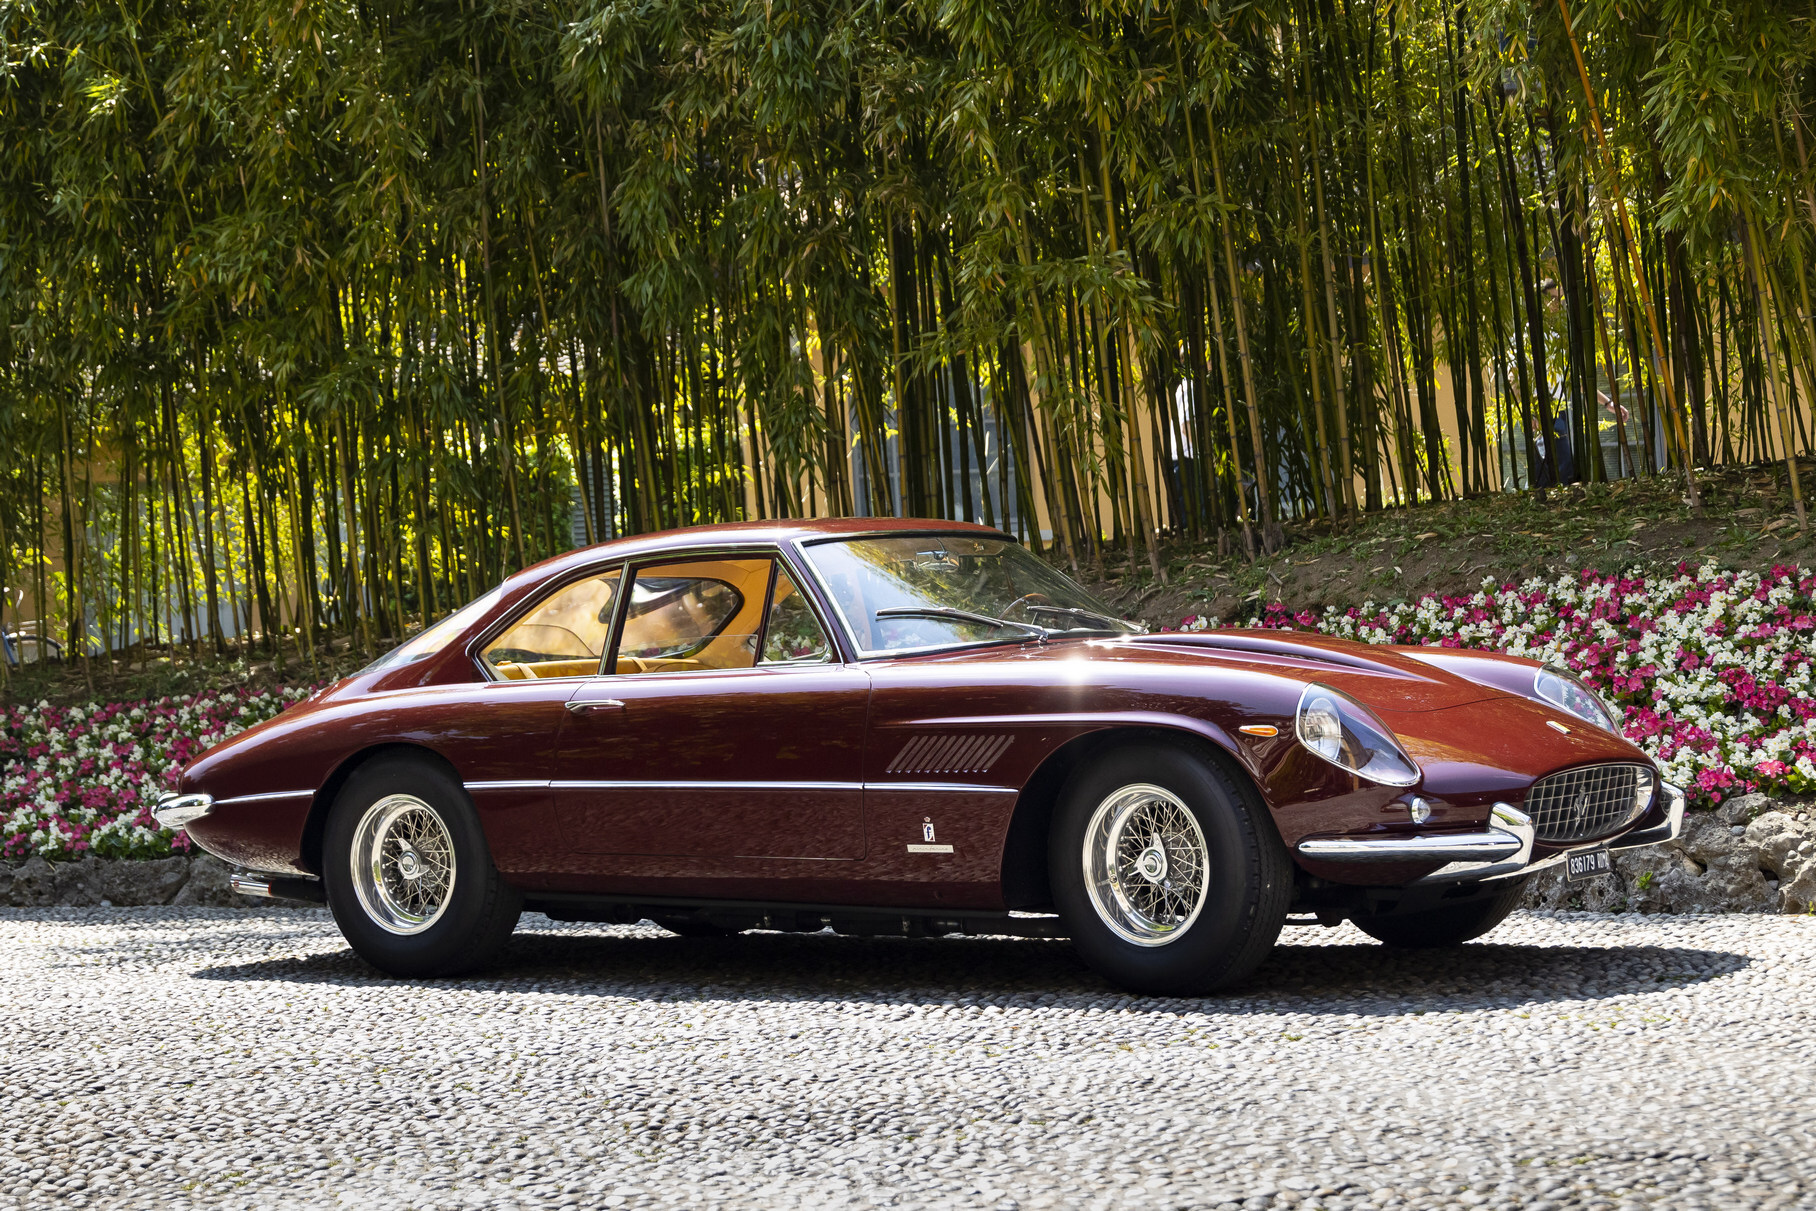 Ferrari 400 Superamerica в начале 1960-х была флагманской моделью марки: крупное купе с богато отделанным салоном и большим V12 4.0 пользовалось спросом у любителей роскоши. Эта машина 1964 года относится к так называемой «серии 2» — с удлинённой колёсной базой и обтекаемым кузовом Aerodinamico. Кстати, в 1967 году она снималась в итальянской комедии Il tigre. С тех пор машина прошла реставрацию, сменила серебристо-серый цвет на бордовый и почти полвека провела в закрытой коллекции. Нынешний выезд — её первое публичное появление со времён съёмок в кино.